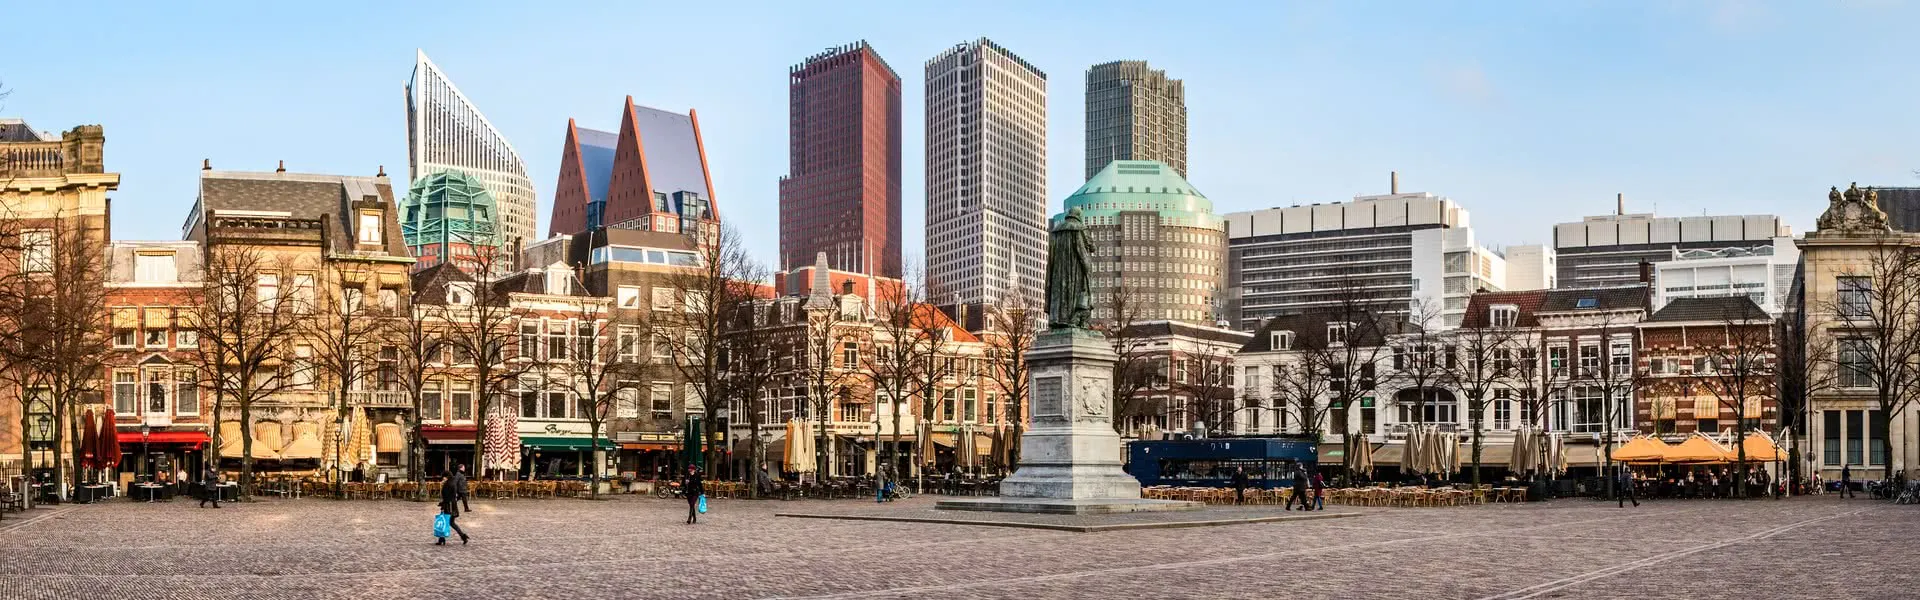 Den Haag - das Reiseziel für Geschäftsreisen